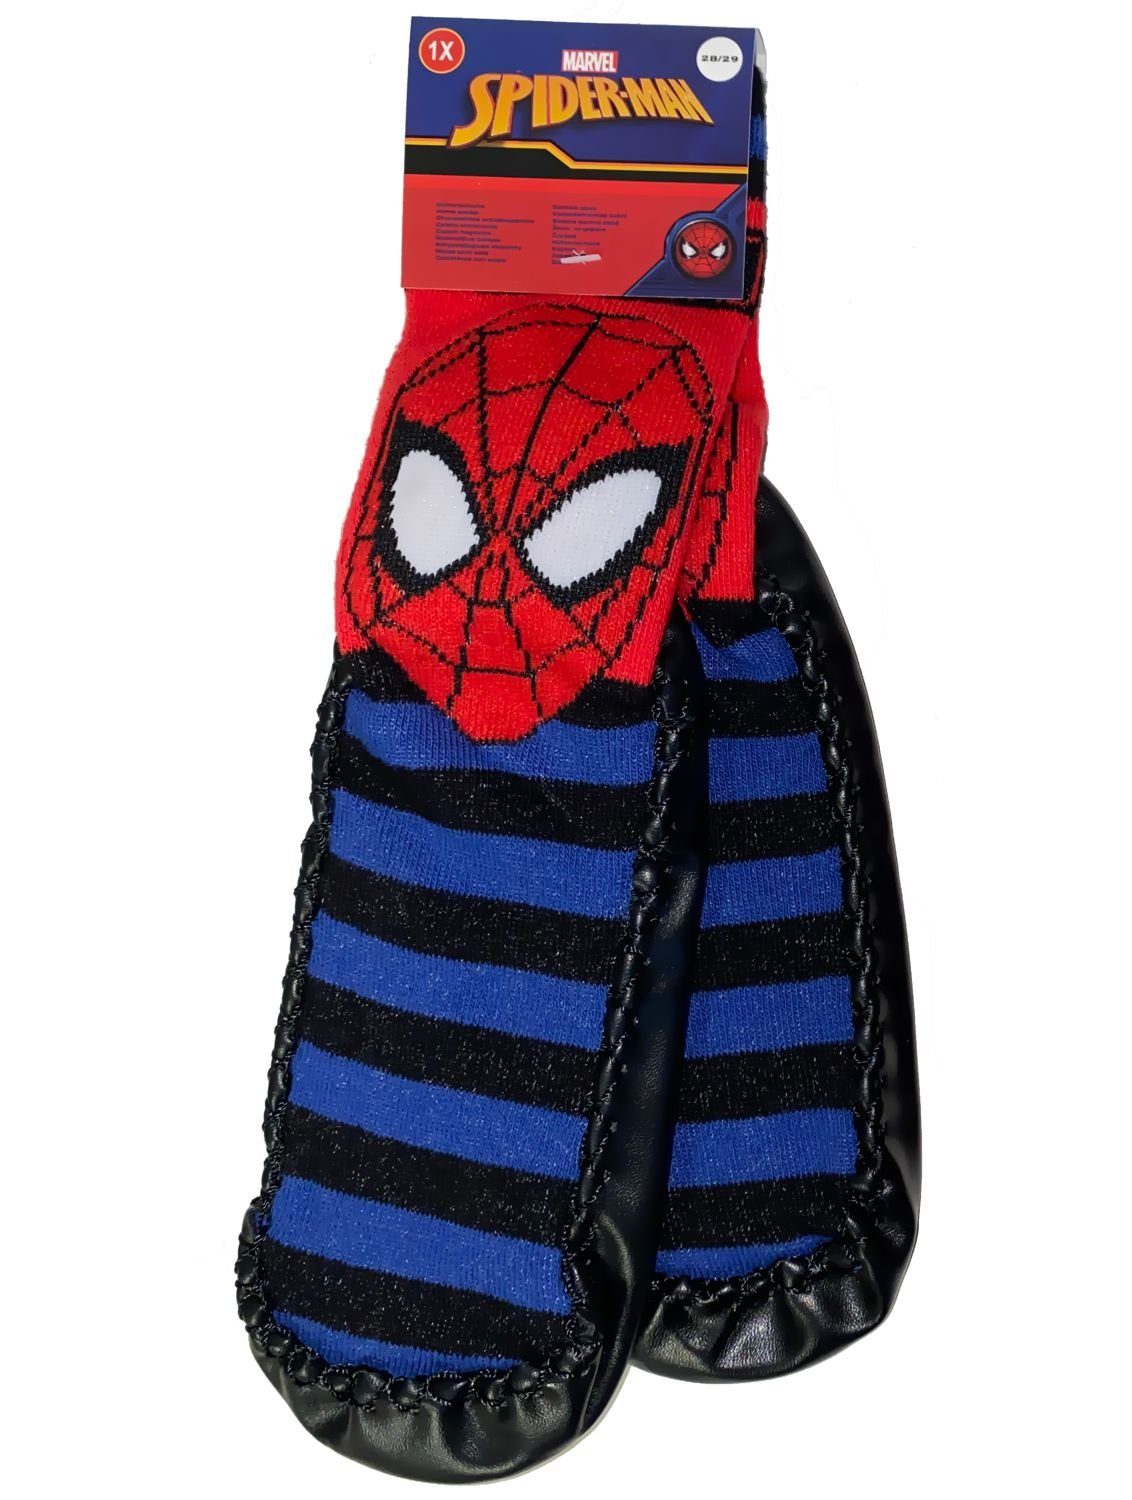 Wäsche/Bademode Socken Spiderman Haussocken SPIDERMAN Kindersocken mit Sohle Hausschuhe Socken Jungen + Mädchen Kita, schule, Zu